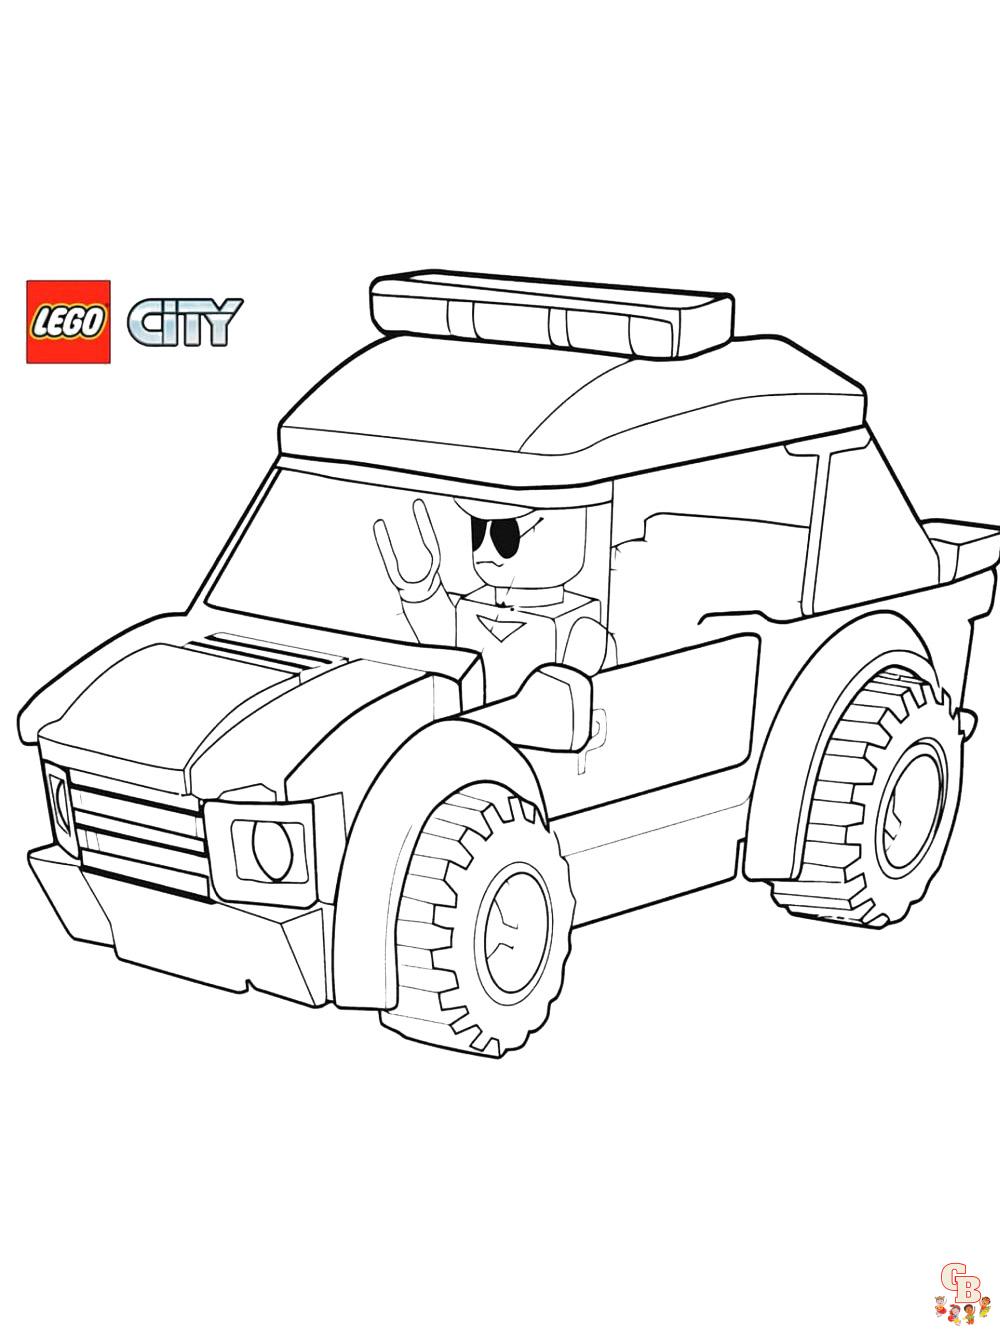 Top 10 divertidas dibujos de Lego City para colorear